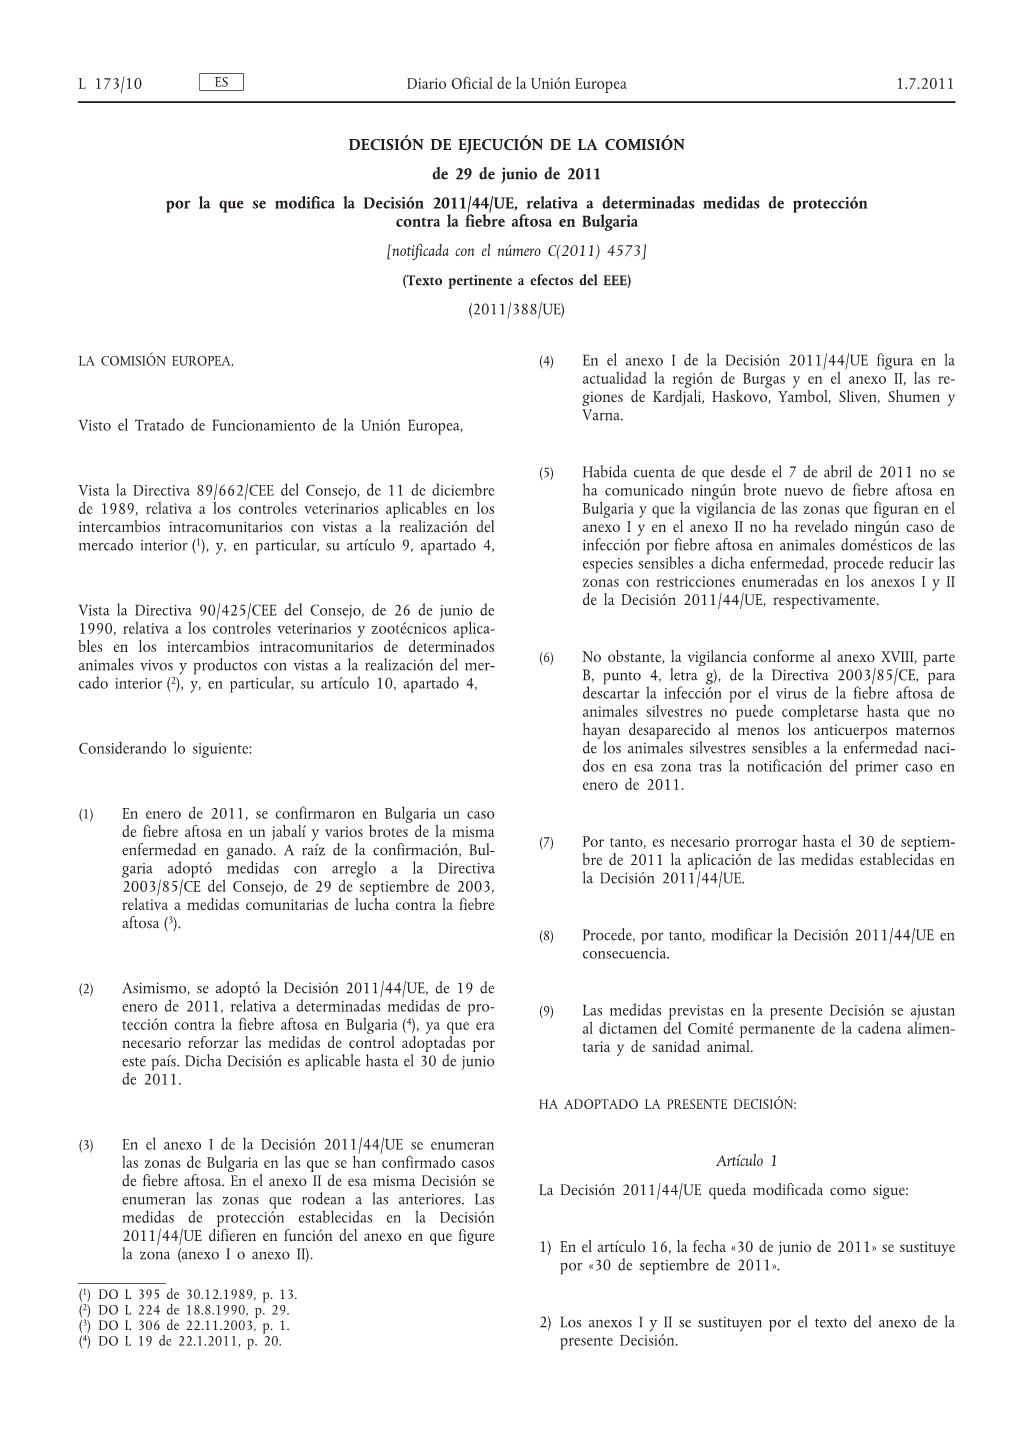 Decisión De Ejecución De La Comisión, De 29 De Junio De 2011, Por La Que